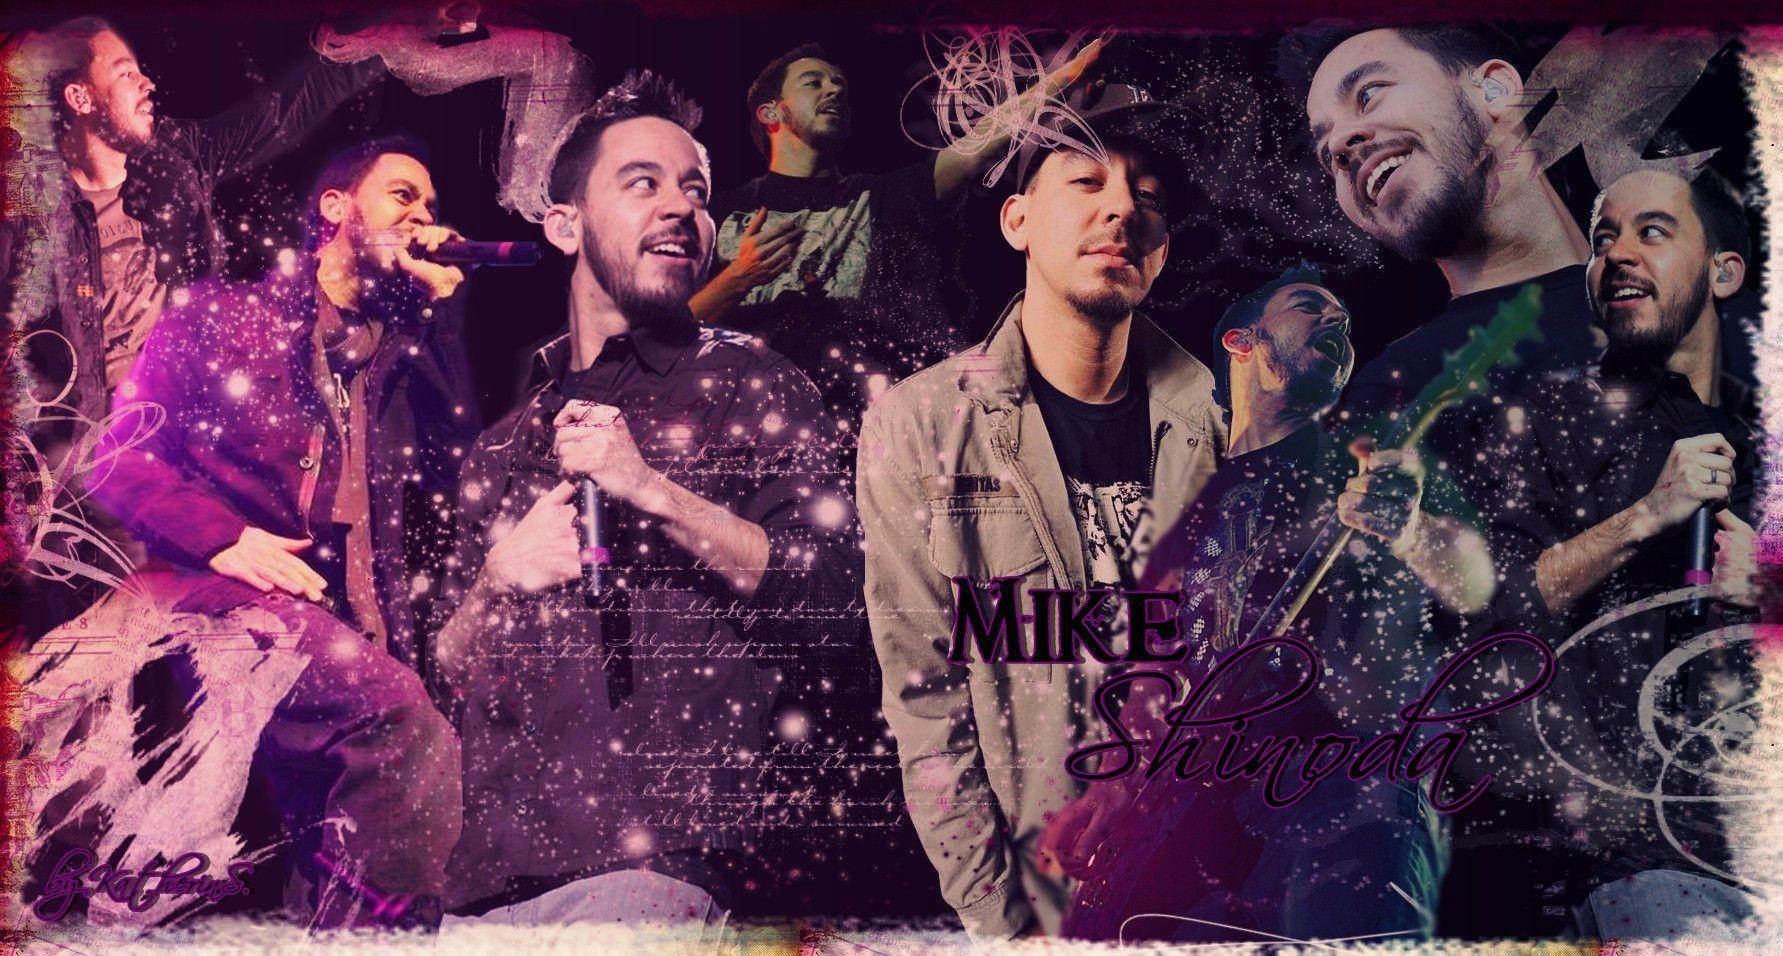 Mike Shinoda Wallpaper